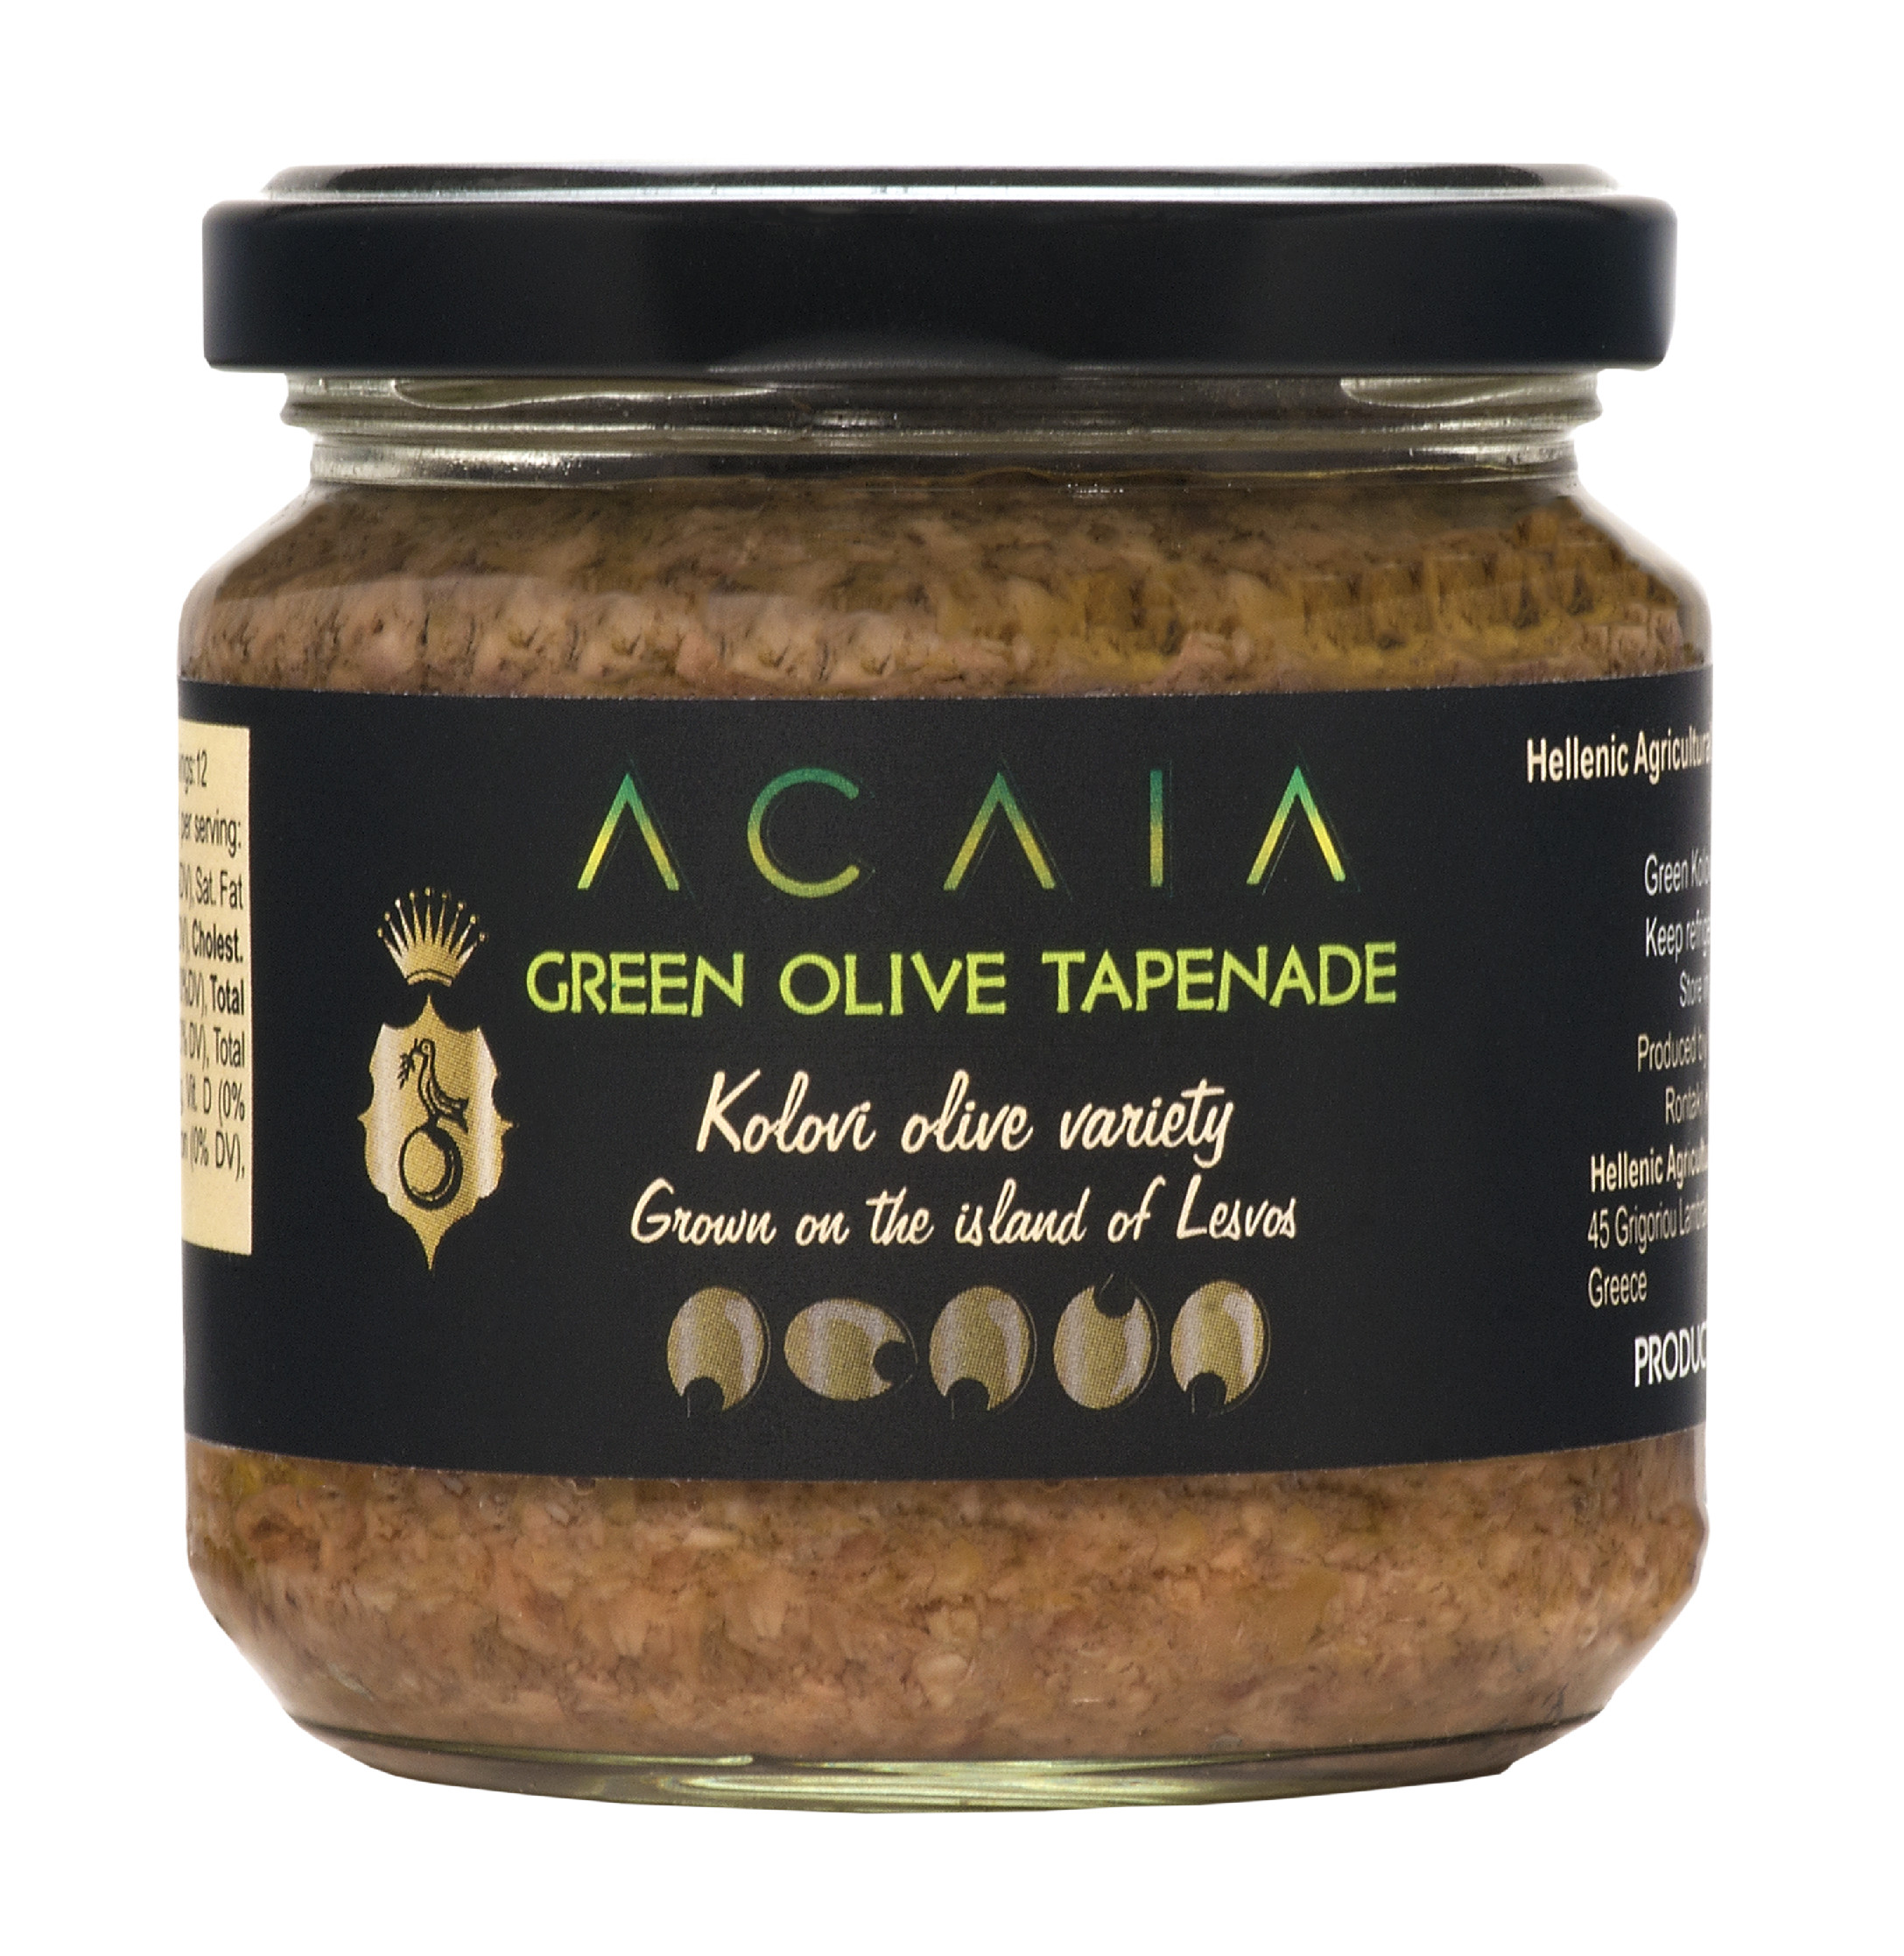 Acaia | Olivová tapenáda ze zelených oliv Kolovi - 190 g